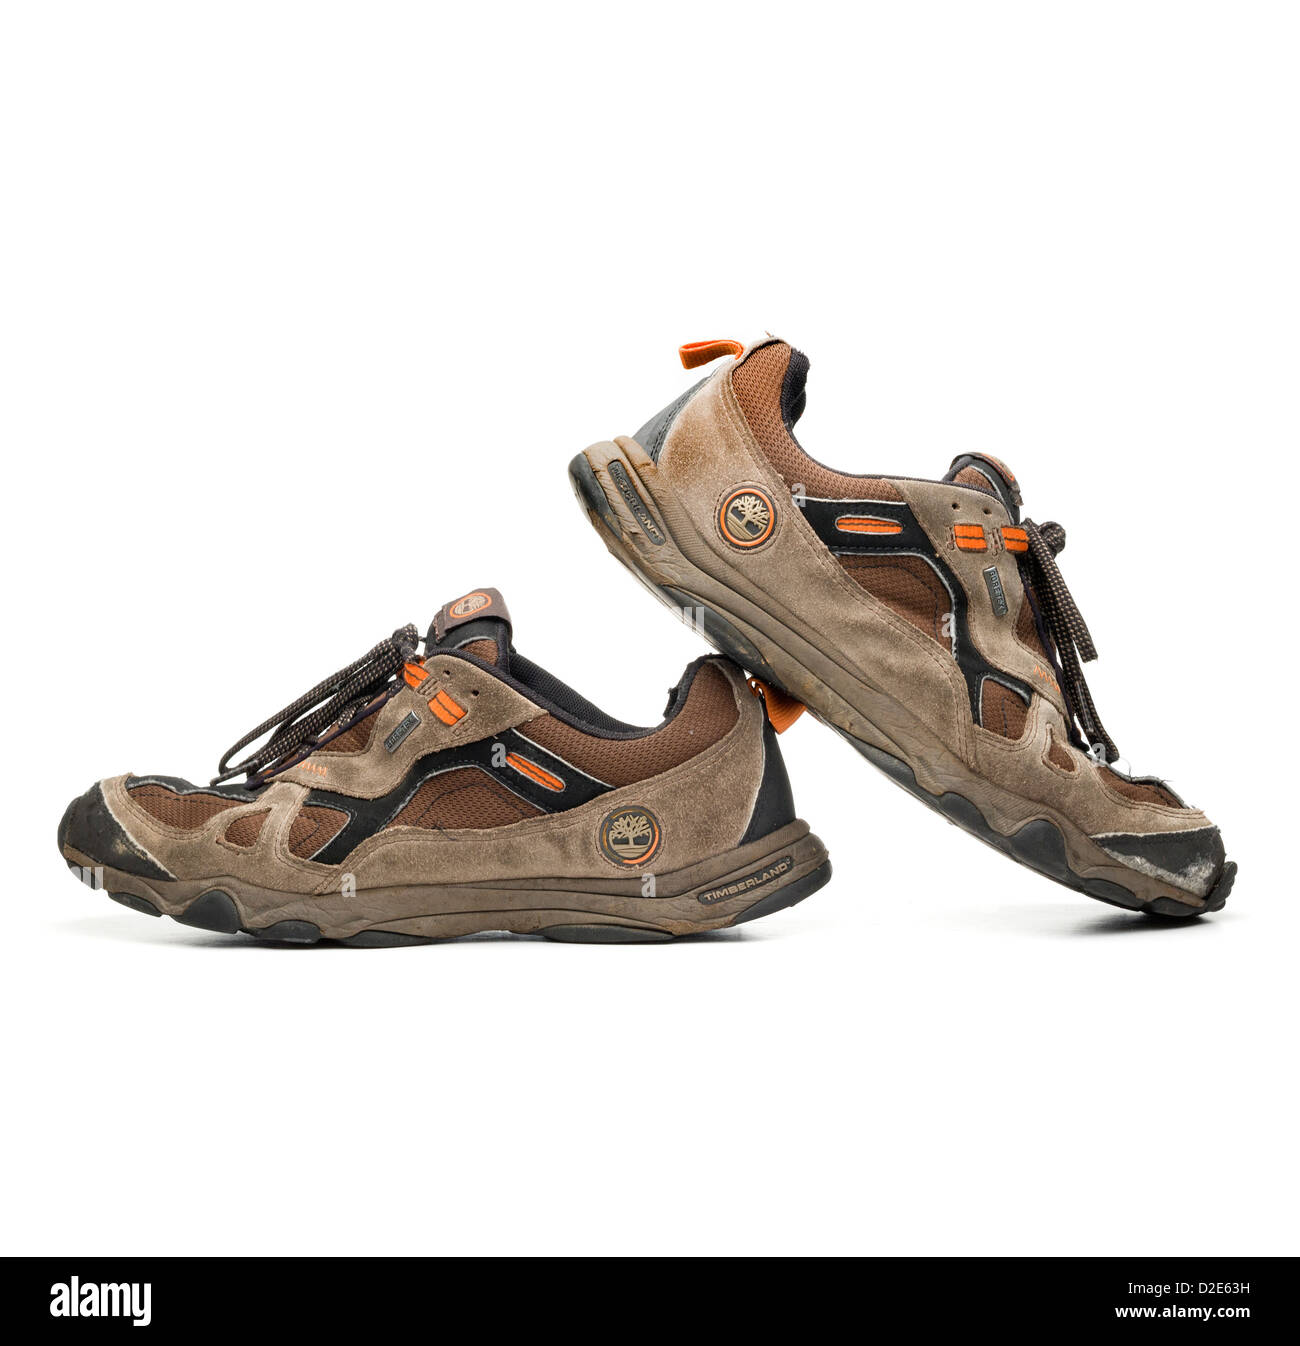 Gracias por tu ayuda Tomar conciencia en frente de Timberland shoes fotografías e imágenes de alta resolución - Alamy